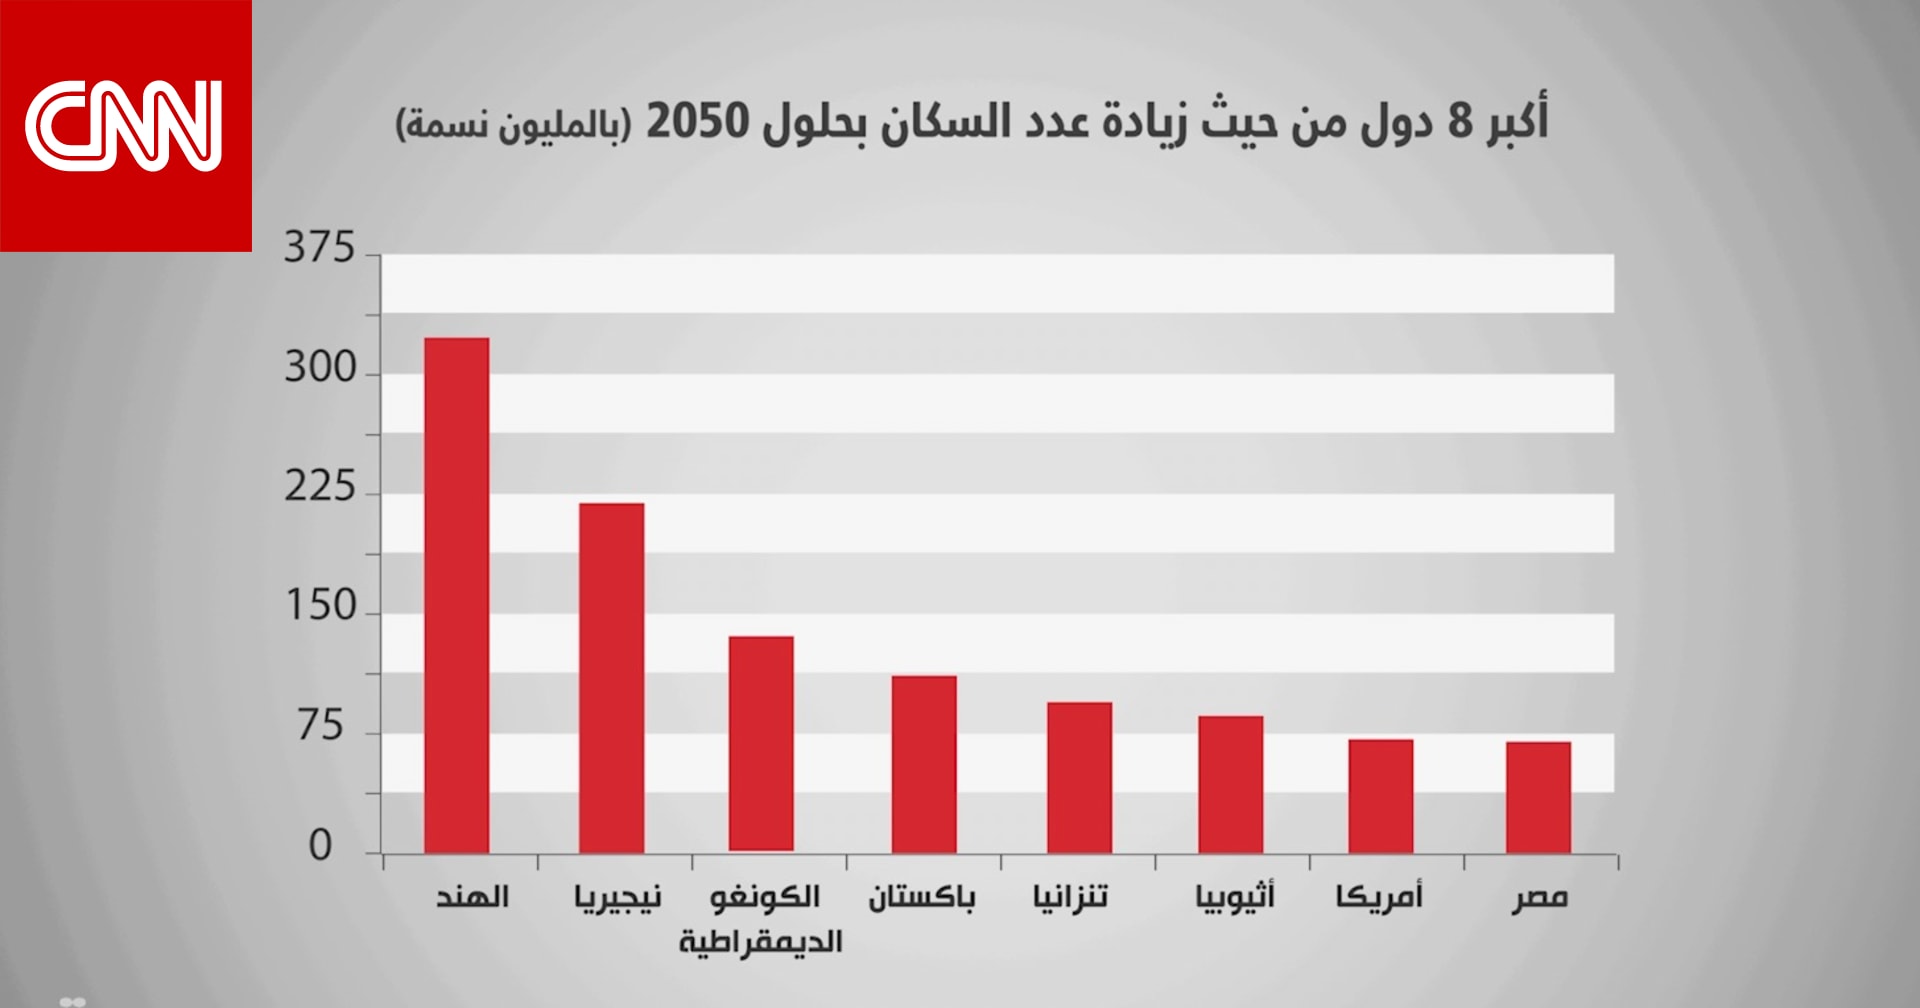 هل تُحقق مصر ثامن أكبر زيادة في عدد السكان بحلول 2050؟ Cnn Arabic 